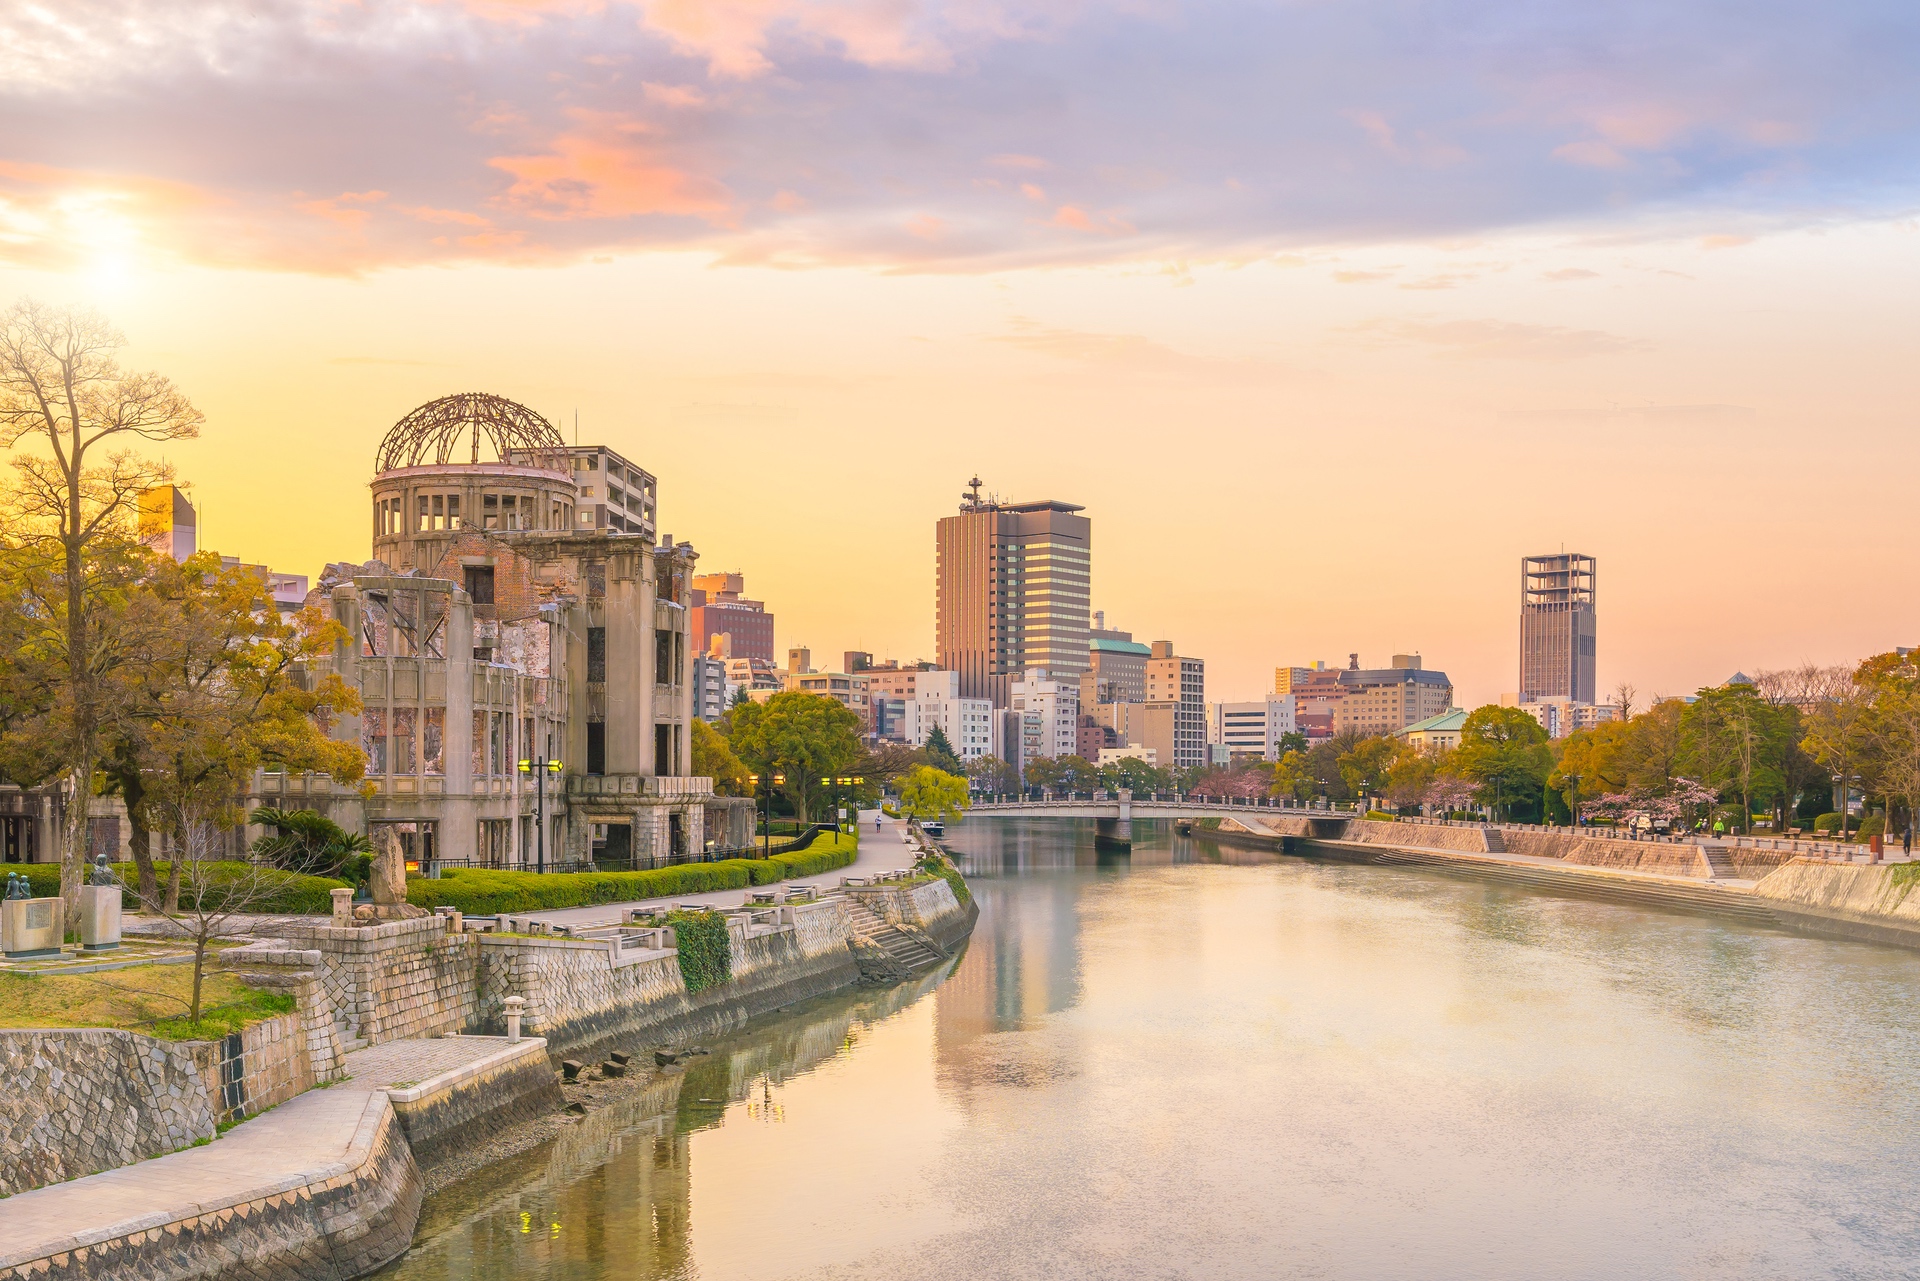 Ein Mahnmal der atomaren Zerstörung: Die Atombombenkuppel von Hiroshima.